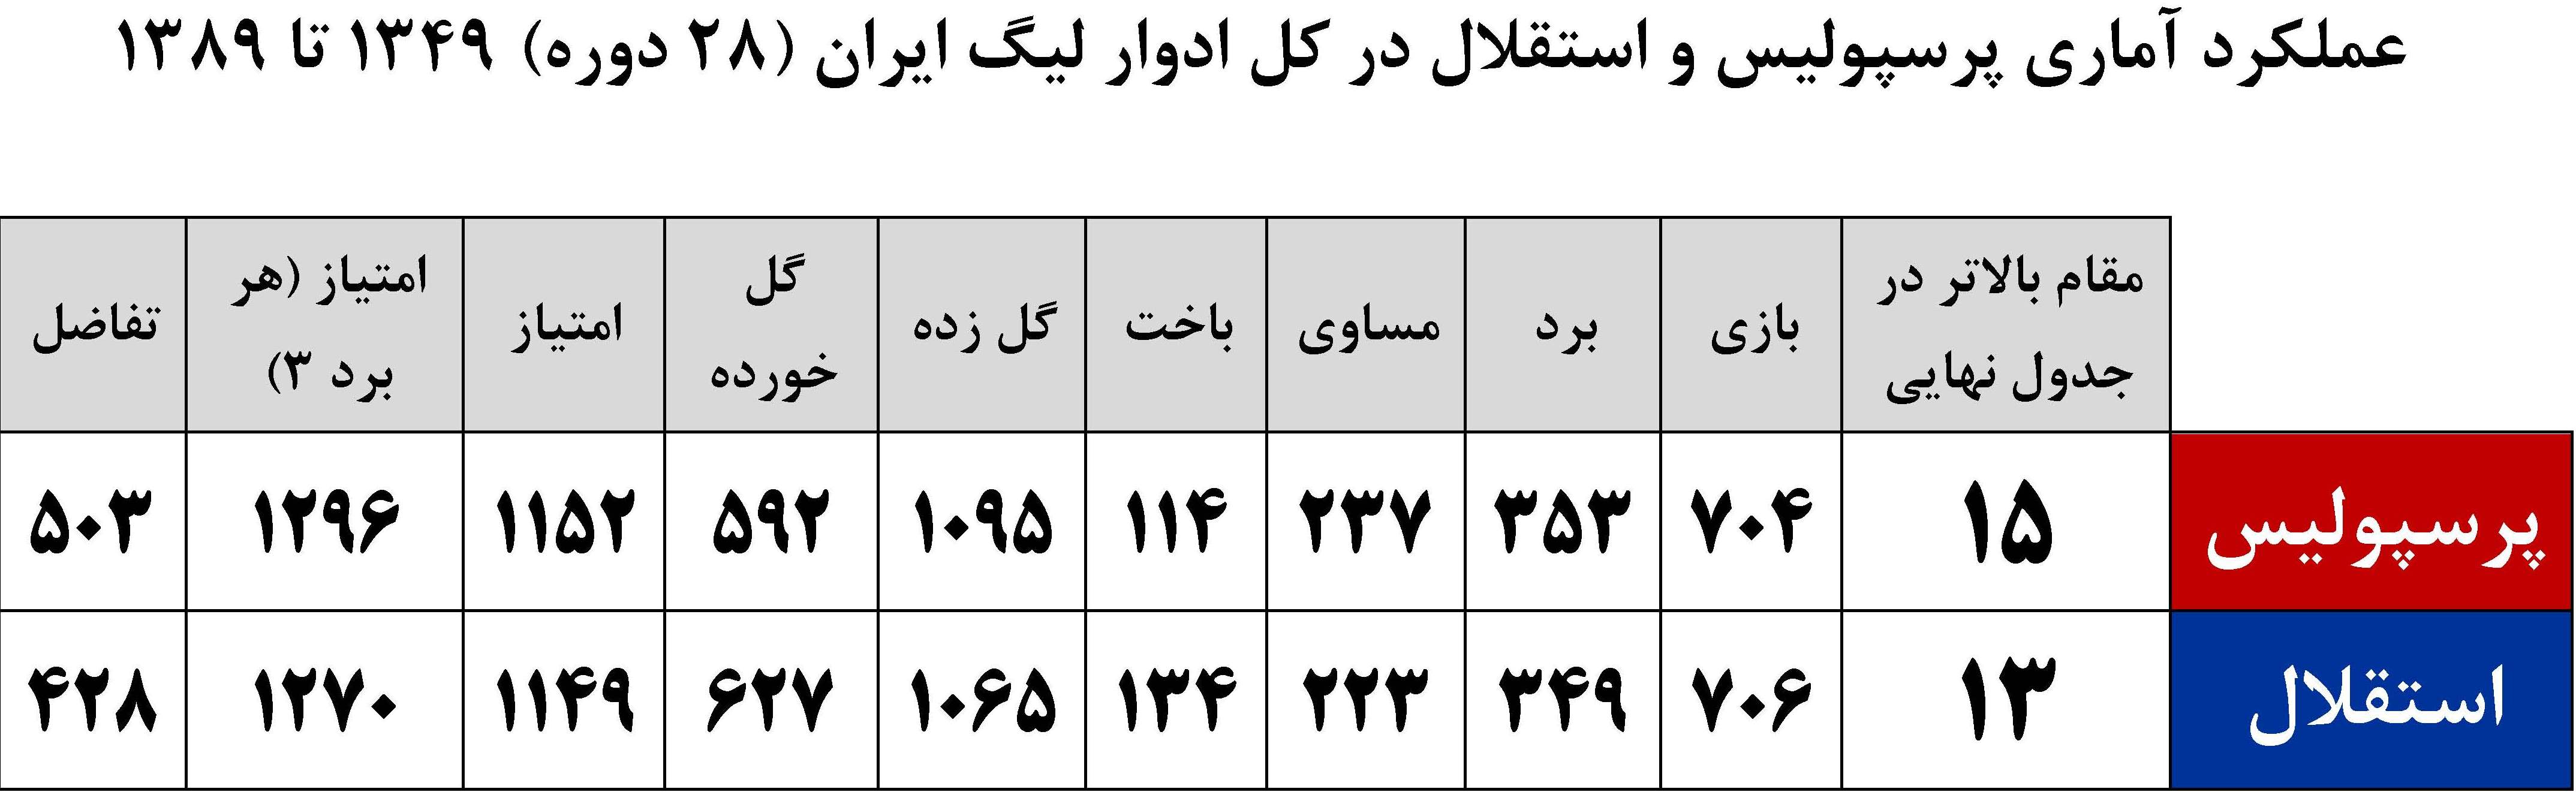 تعداد قهرمانی پرسپولیس و استقلال در لیگ ایران